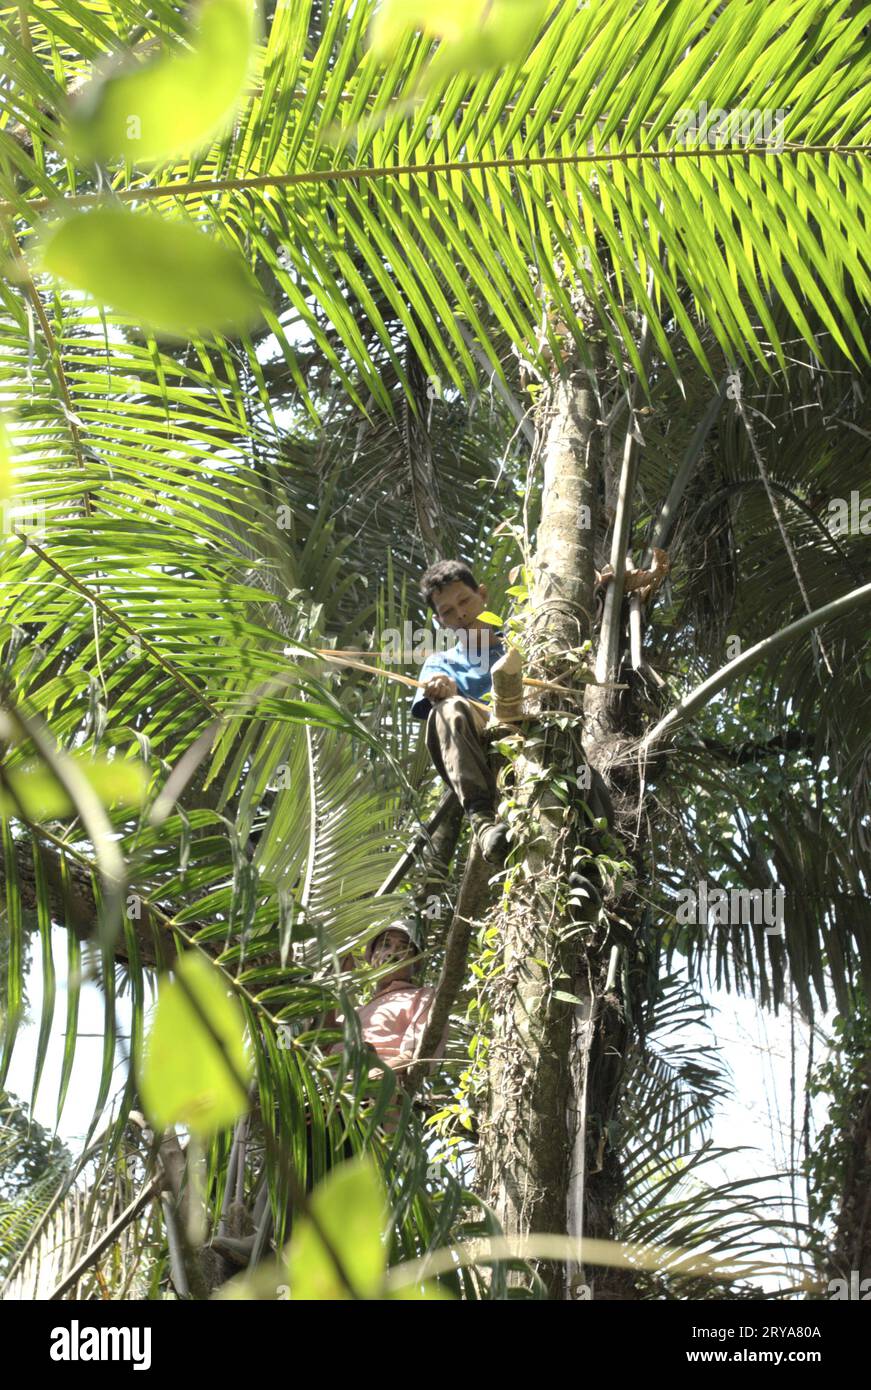 Ein Ranger baut eine Baumplattform für die Überwachung von Wildtieren im Ujung Kulon National Park, Pandeglang, Banten, Indonesien. "Große Gebiete von Nationalparks wurden unter strengen Schutz gestellt, um die Erhaltung der biologischen Vielfalt und die Integrität der Ökosysteme zu gewährleisten; das den Gemeinden den Zugang zu Land und natürlichen Ressourcen entzieht, ihren Lebensunterhalt unter Druck setzt und zu Konflikten in der Gemeinschaft führt“, schrieb ein Forscherteam unter der Leitung von A-li Yang (School of Tourism, Northwest Normal University, Lanzhou) in ihrem 2021 veröffentlichten Artikel von Atlantic Press. Stockfoto